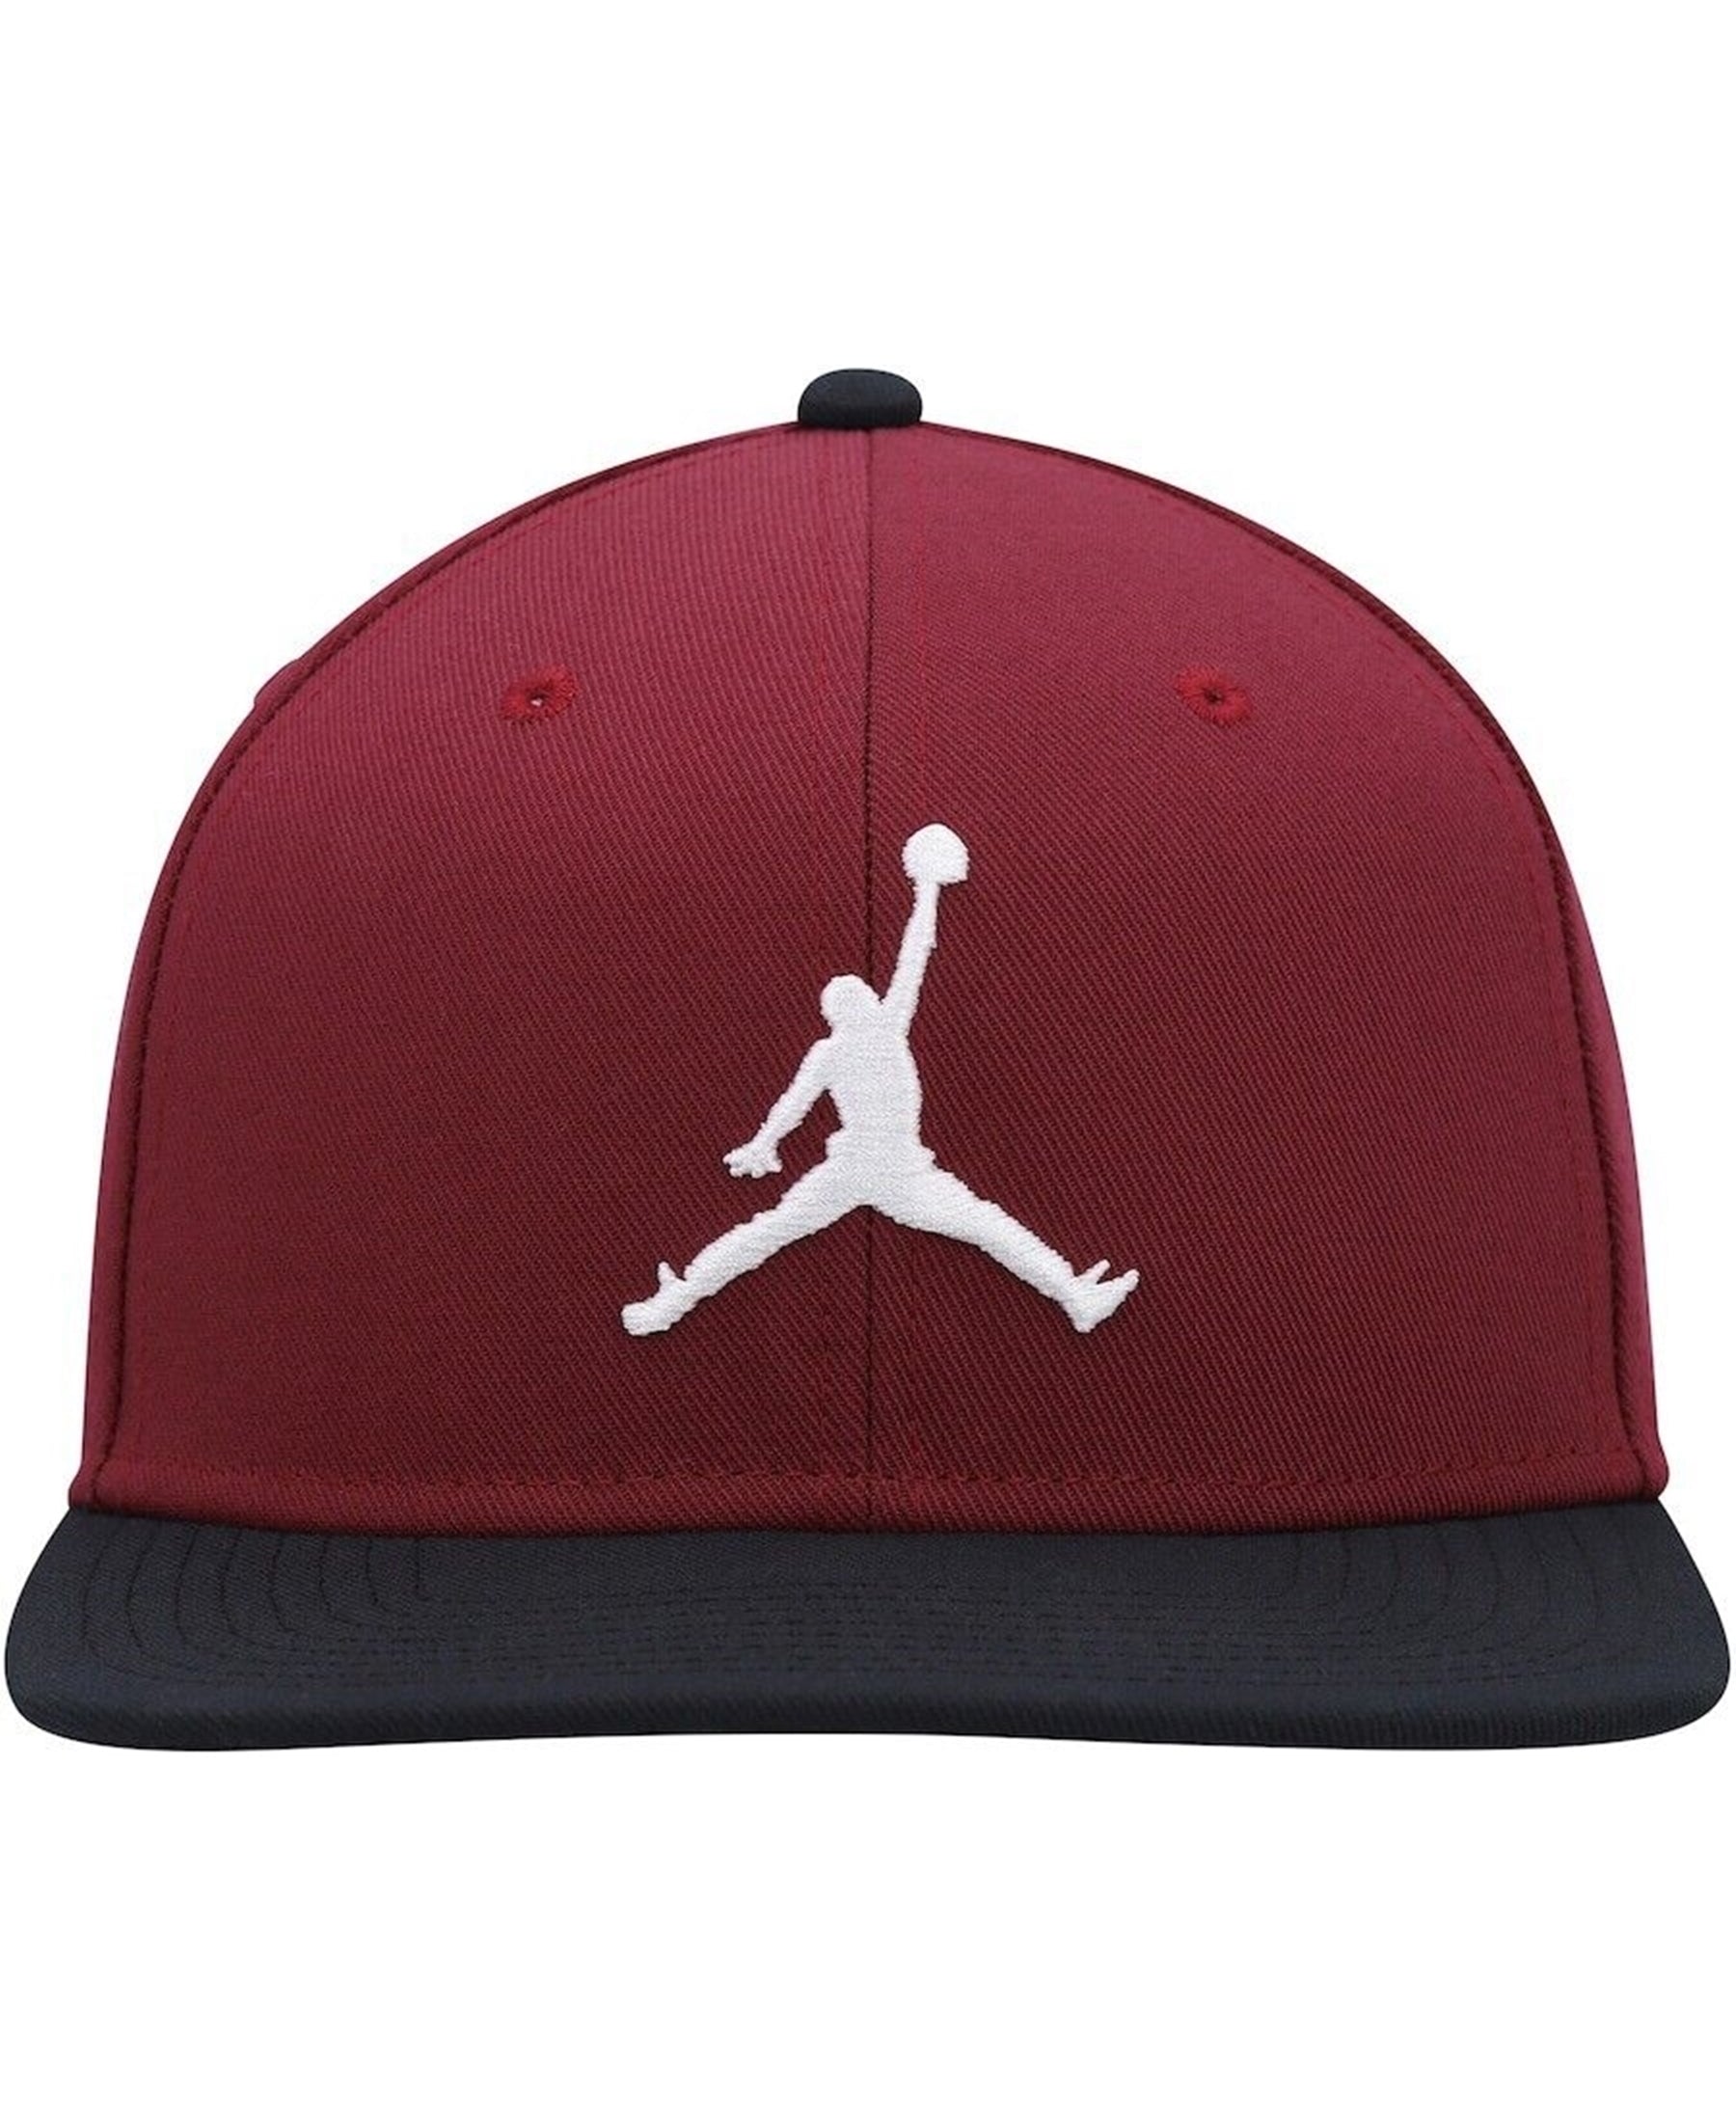 Entdecken Sie die Nike Jordan Pro Jumpman 3D Logo Snapback Cap (Artikelnummer AR2118-680) – ein Must-have für Basketball- und Streetwear-Fans. Mit ihrem auffälligen 3D-Logo und bequemen Tragekomfort ist diese Kappe der perfekte Style-Statement. Erhältlich bei SHOP4TEAMSPORT für Ihren einzigartigen Look.